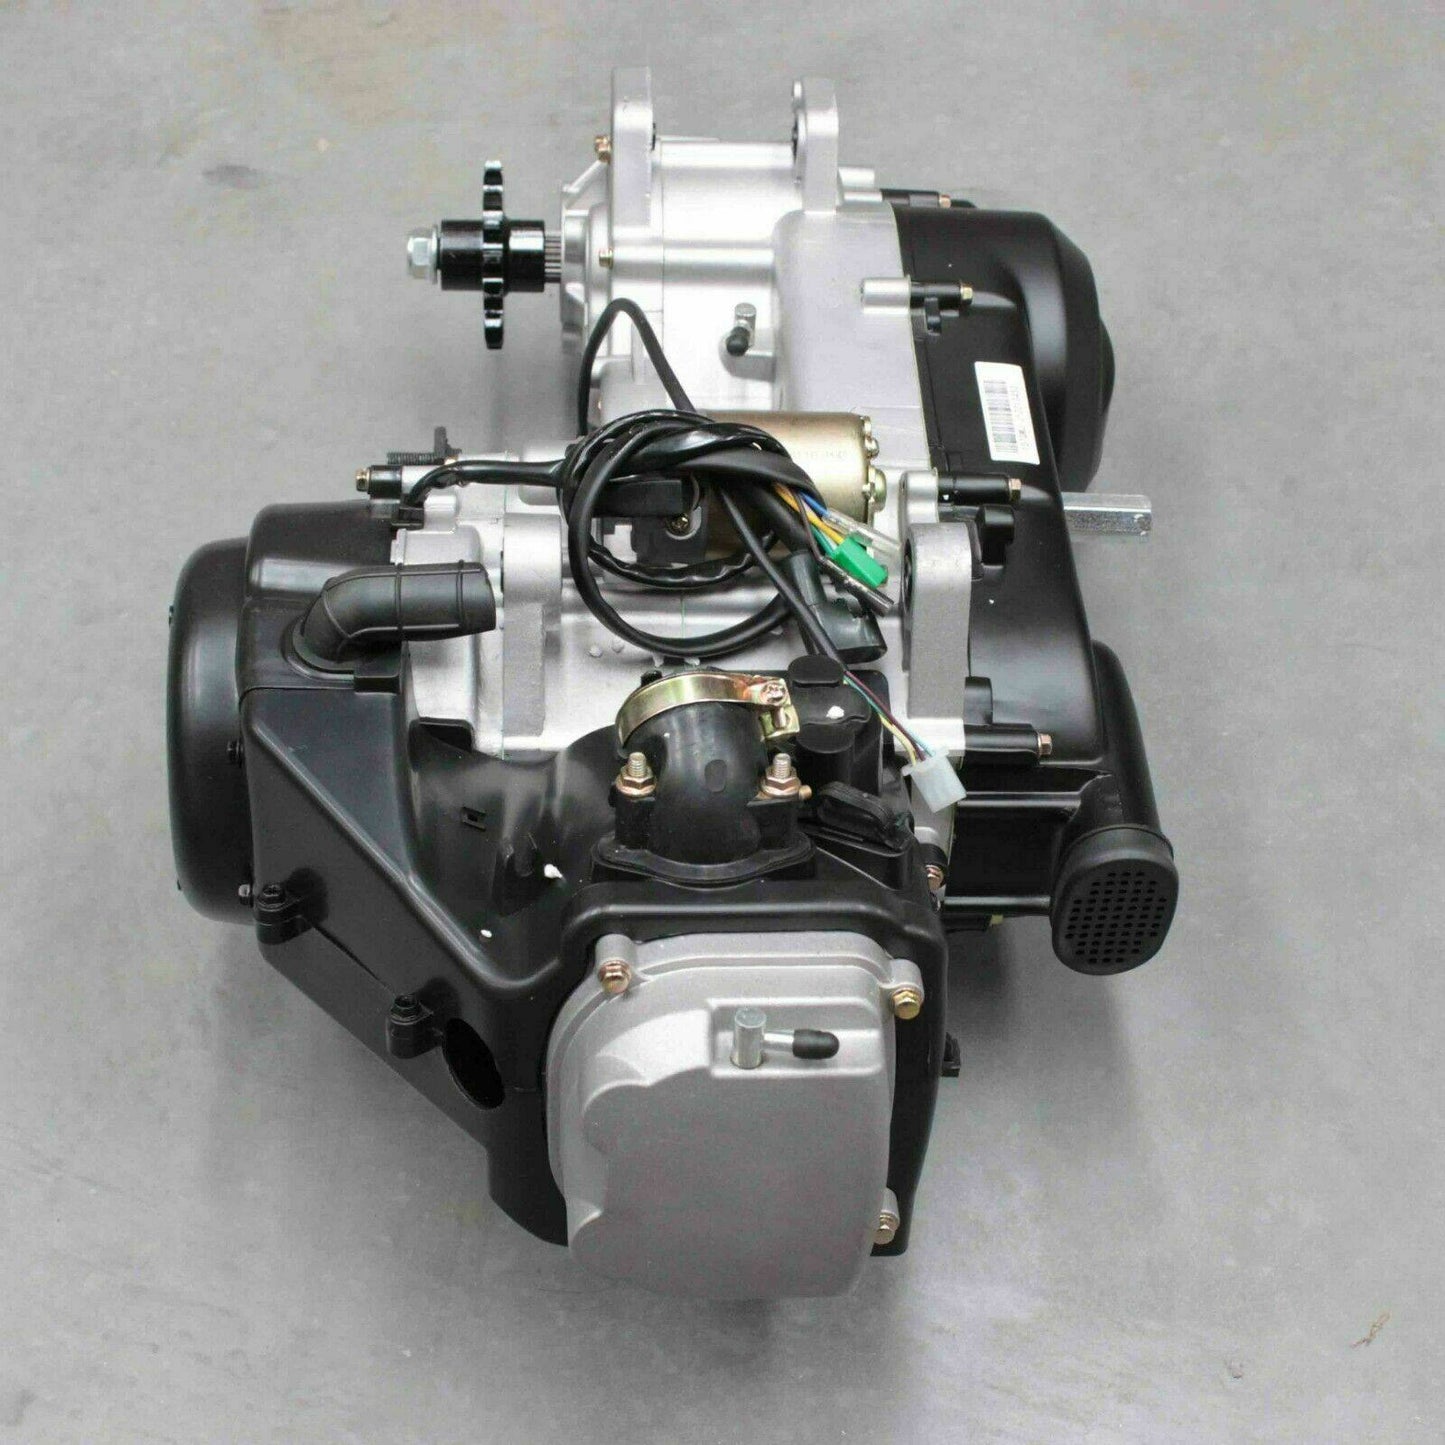 GY6 150cc Engine Motor ATV Quad Scooter Go Kart Buggy 4 Stroke Auto CVT Clutch - TDRMOTO